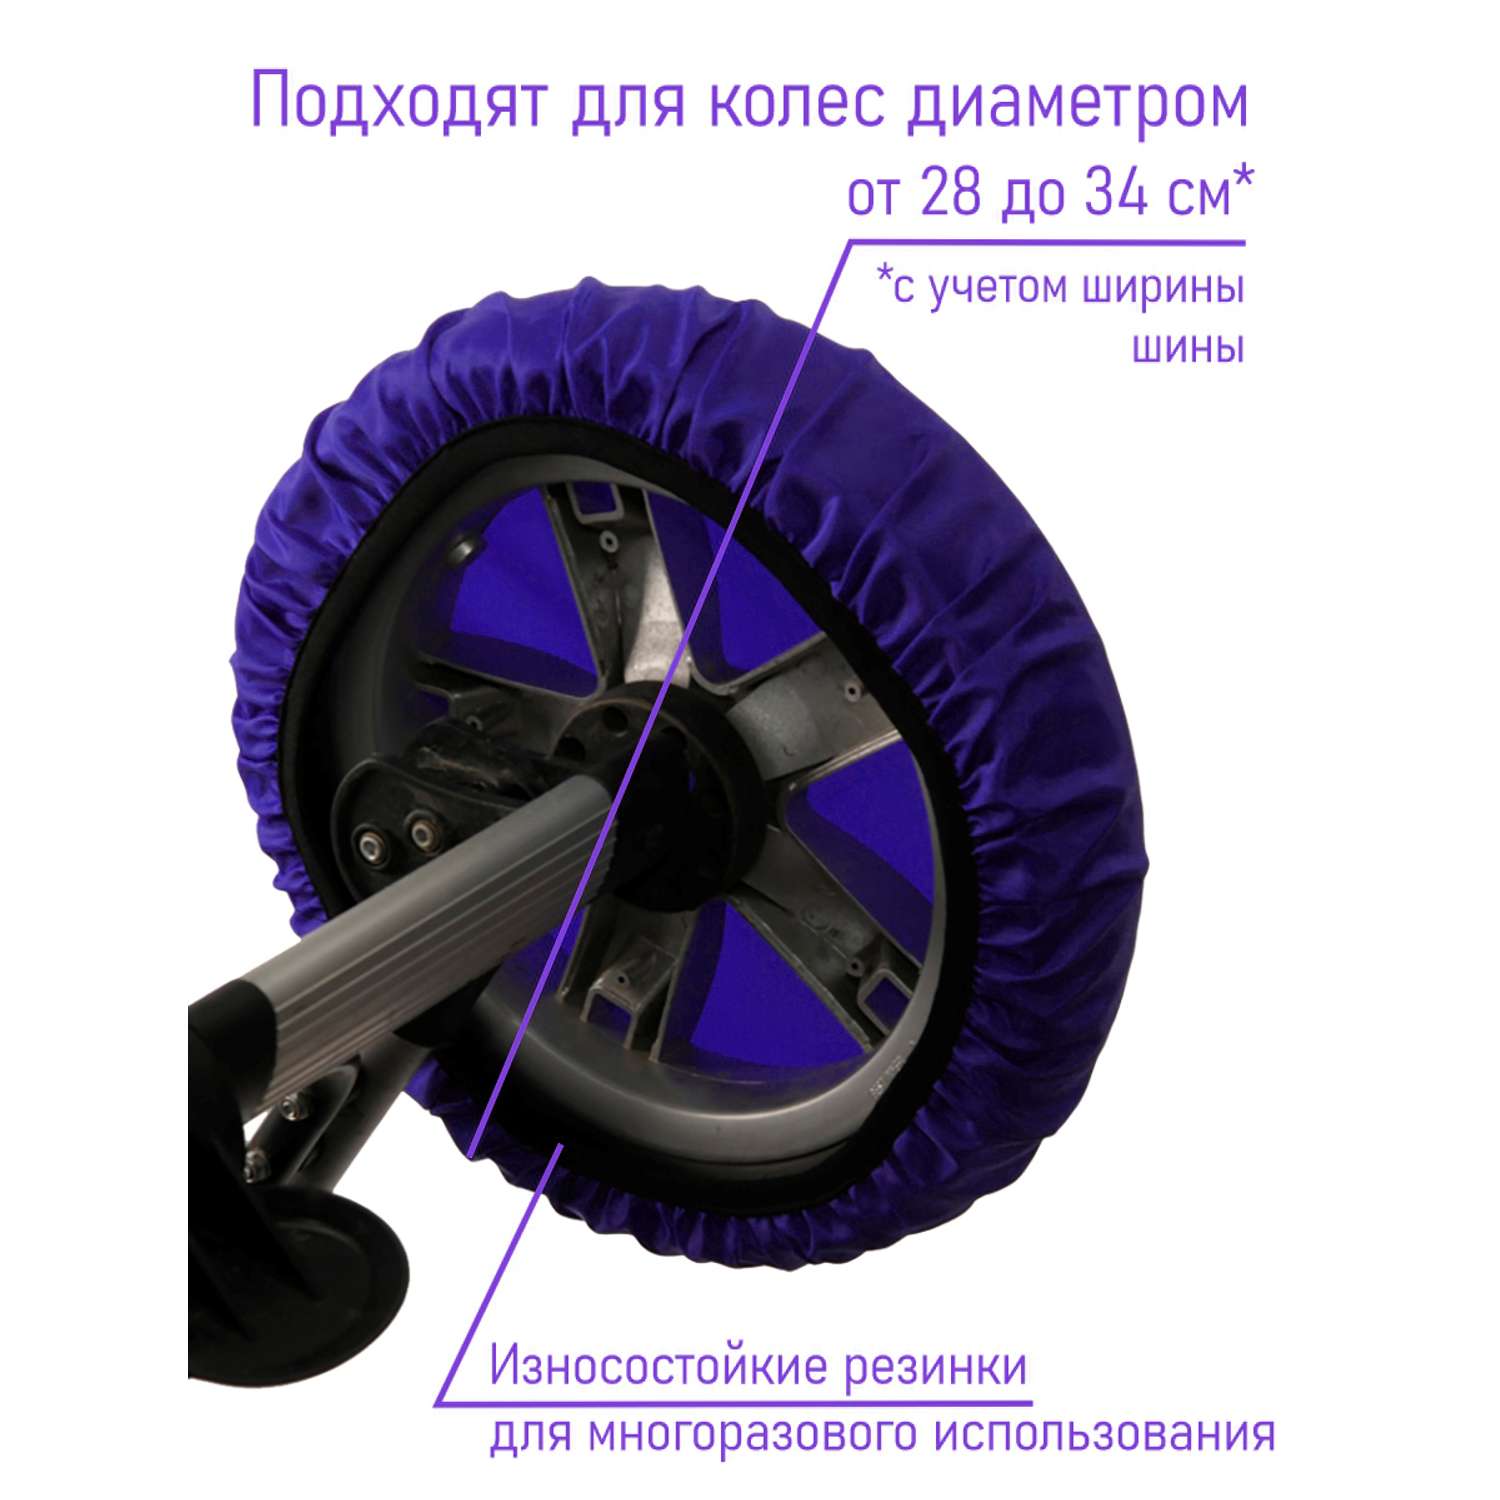 Чехлы на колеса Чудо-чадо 4 шт василёк / d = 28-34 см CHK01-003 - фото 2